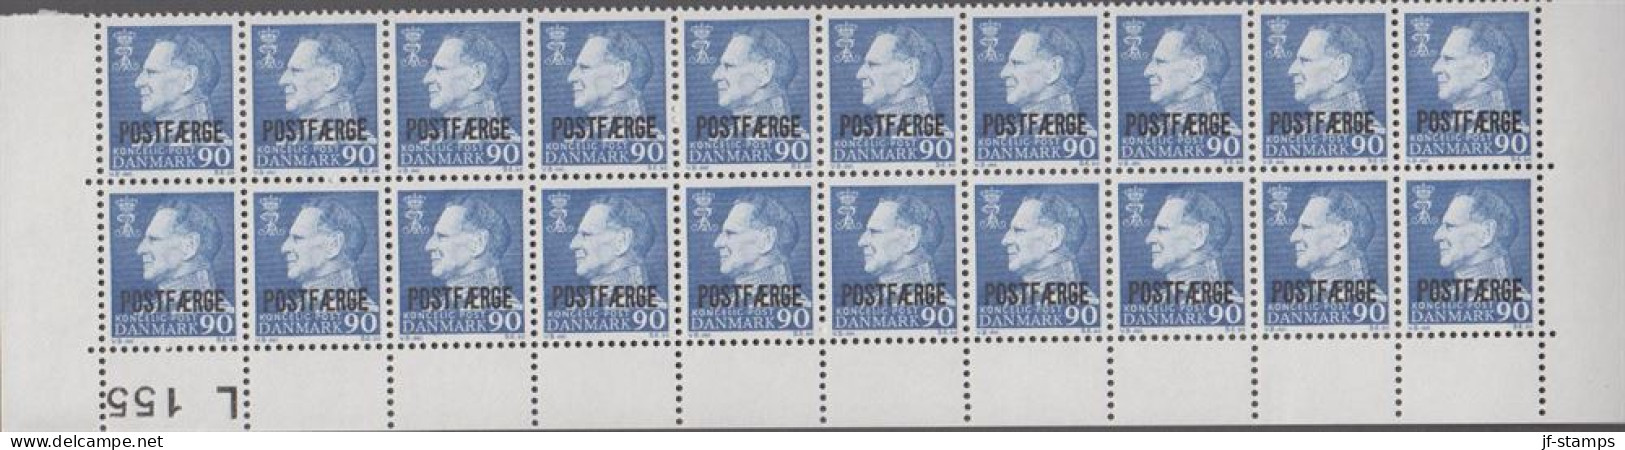 1970. Postfærge. 90 øre Frederik Overprinted POSTFÆRGE In 20-block With Lower Margin L 155. ... (Michel PF43) - JF538518 - Pacchi Postali